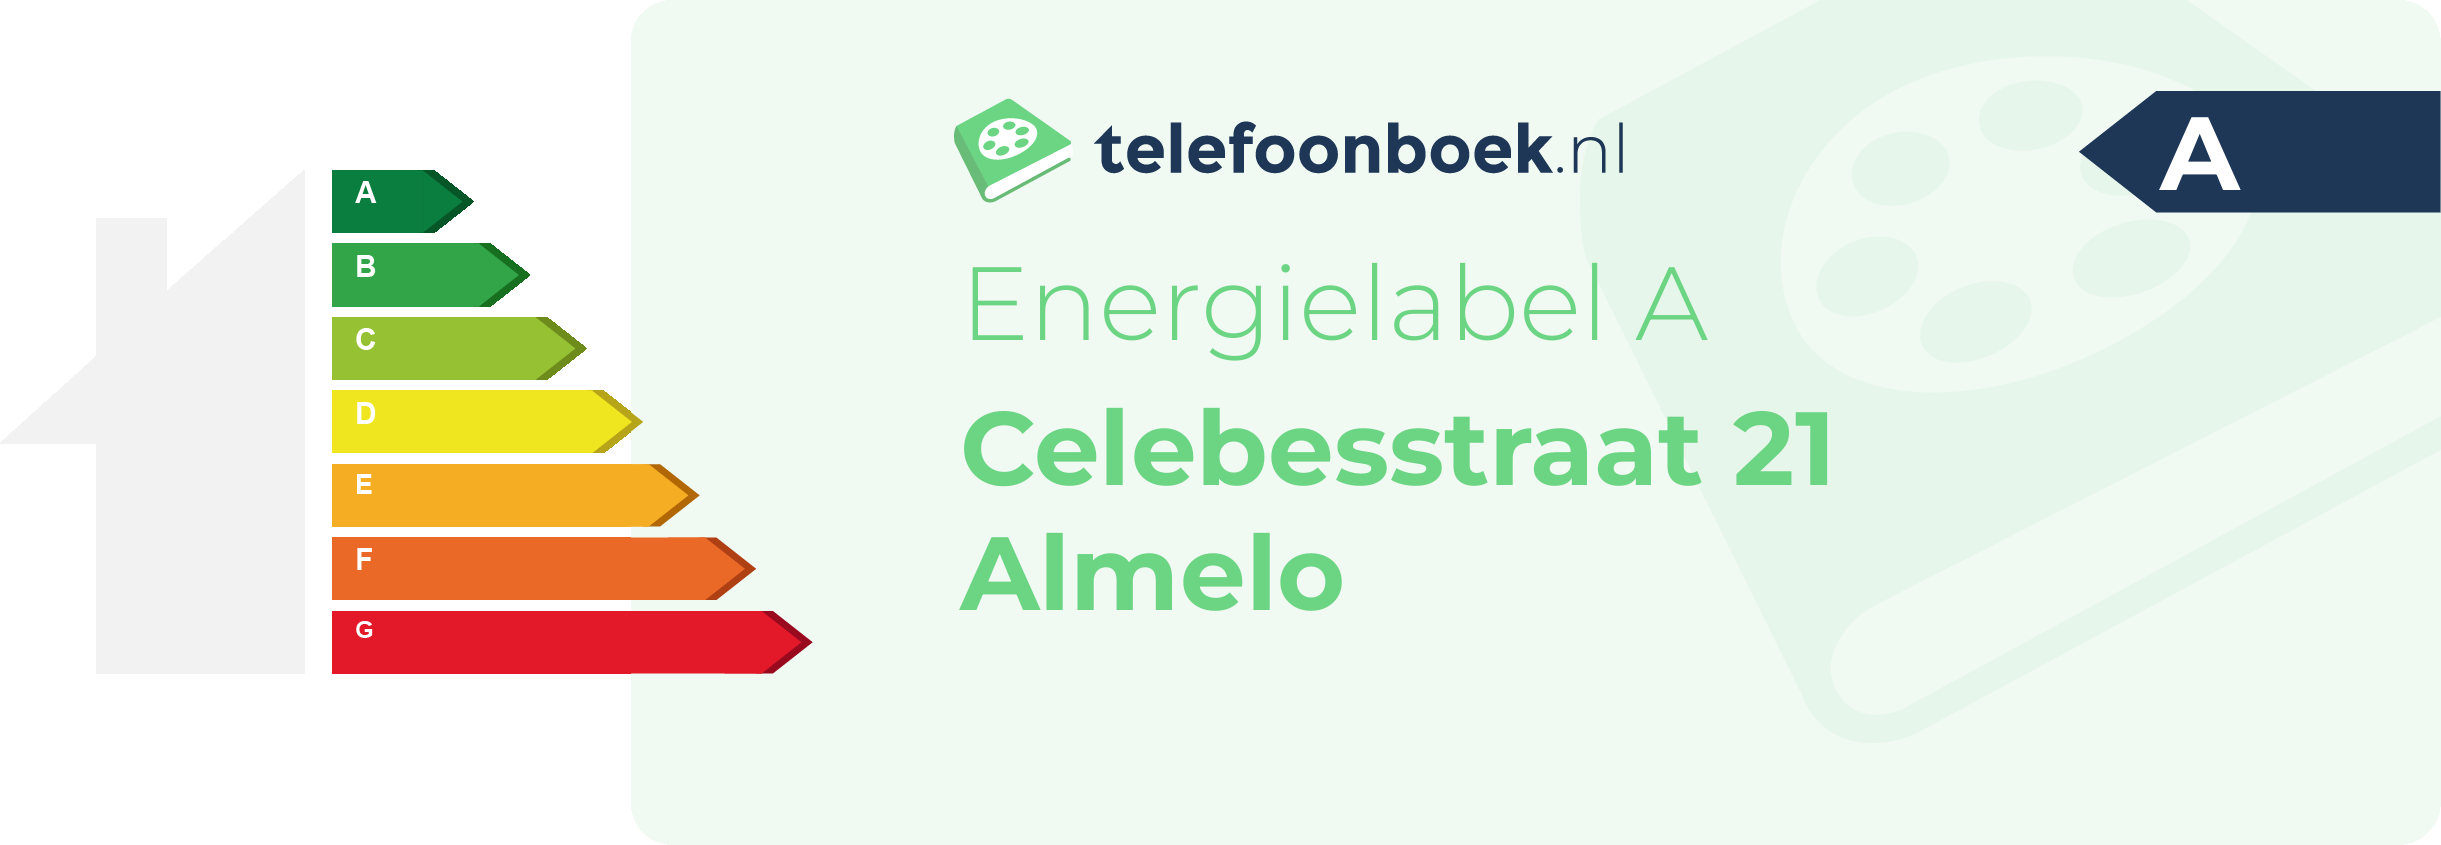 Energielabel Celebesstraat 21 Almelo